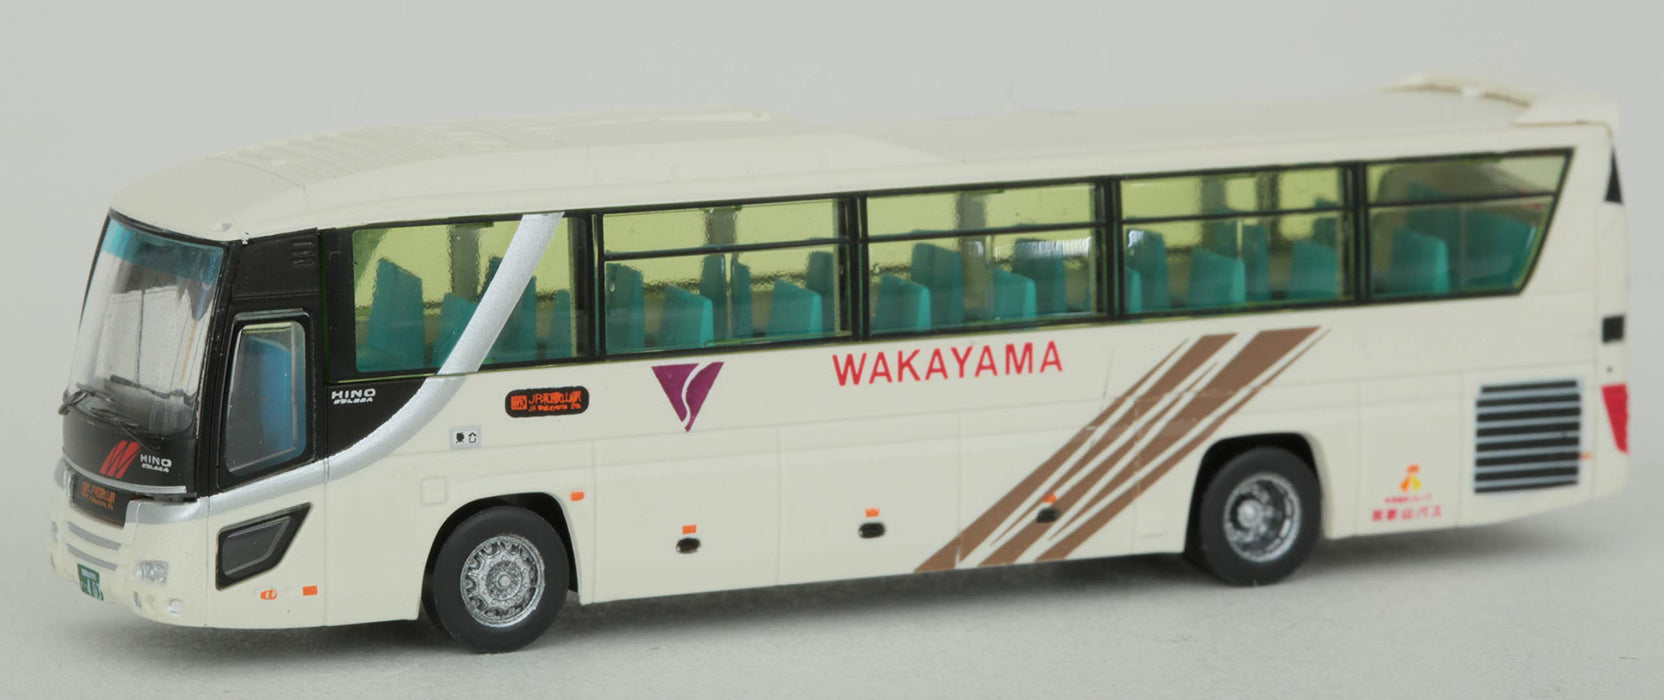 Tomytec Kansai International Airport Bus Set A - Dioramazubehör in limitierter Auflage